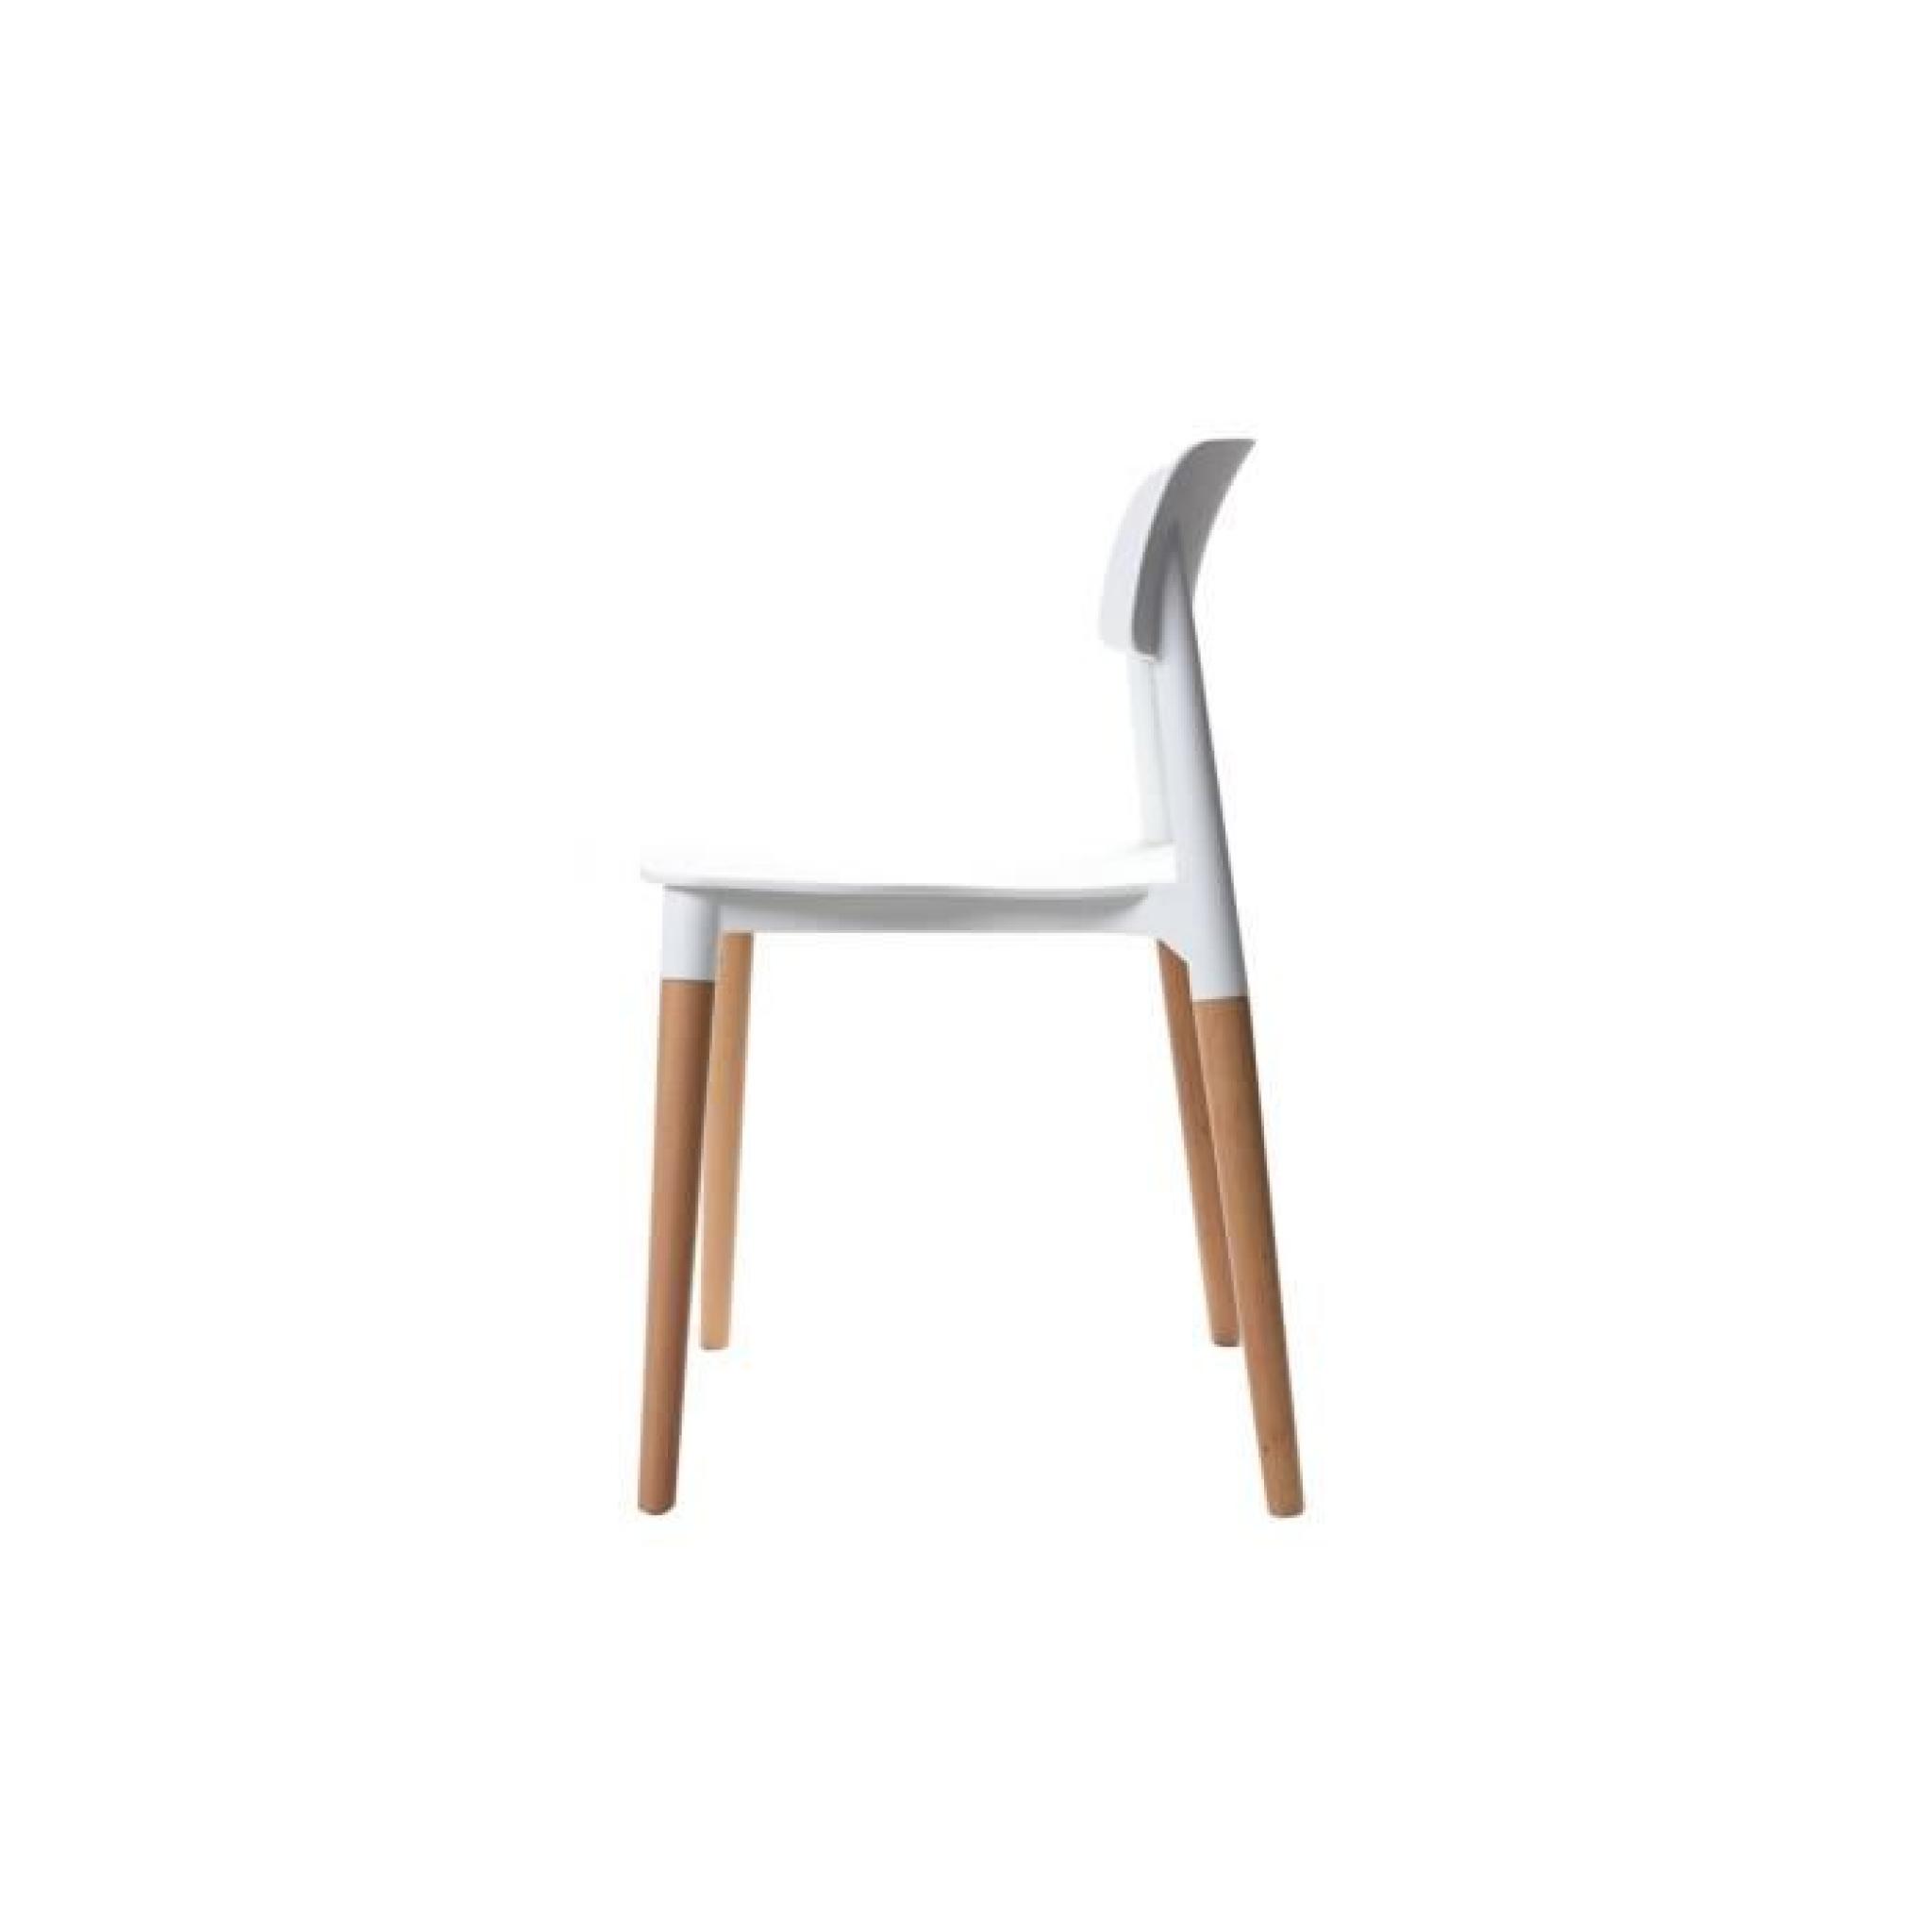 Miliboo - Lot de deux chaises design scandinave… pas cher